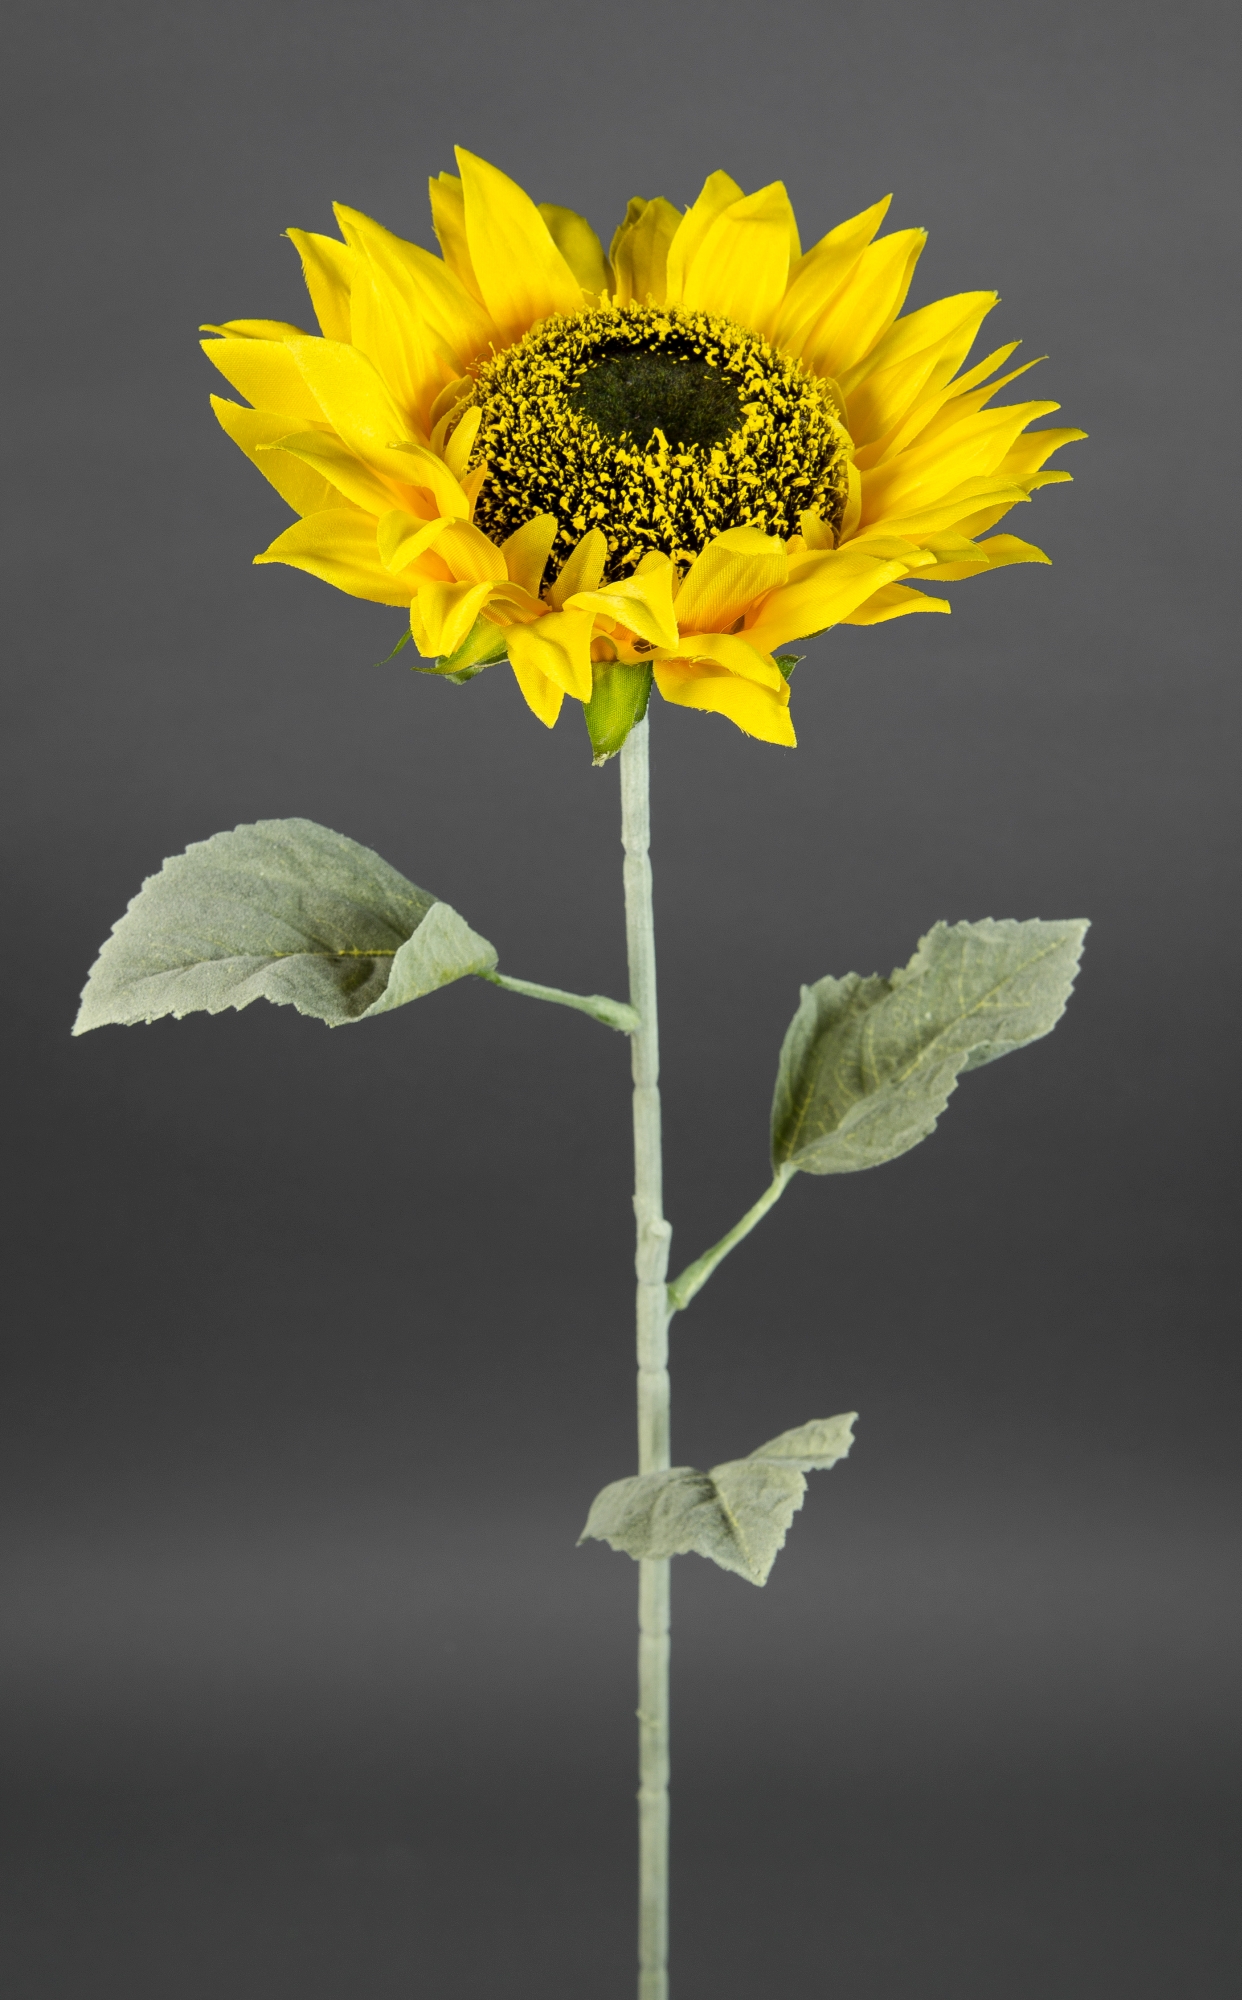 Sonnenblume Deluxe 75cm LM (Modell 2019) Kunstblumen künstliche Blumen Sonnenblumen